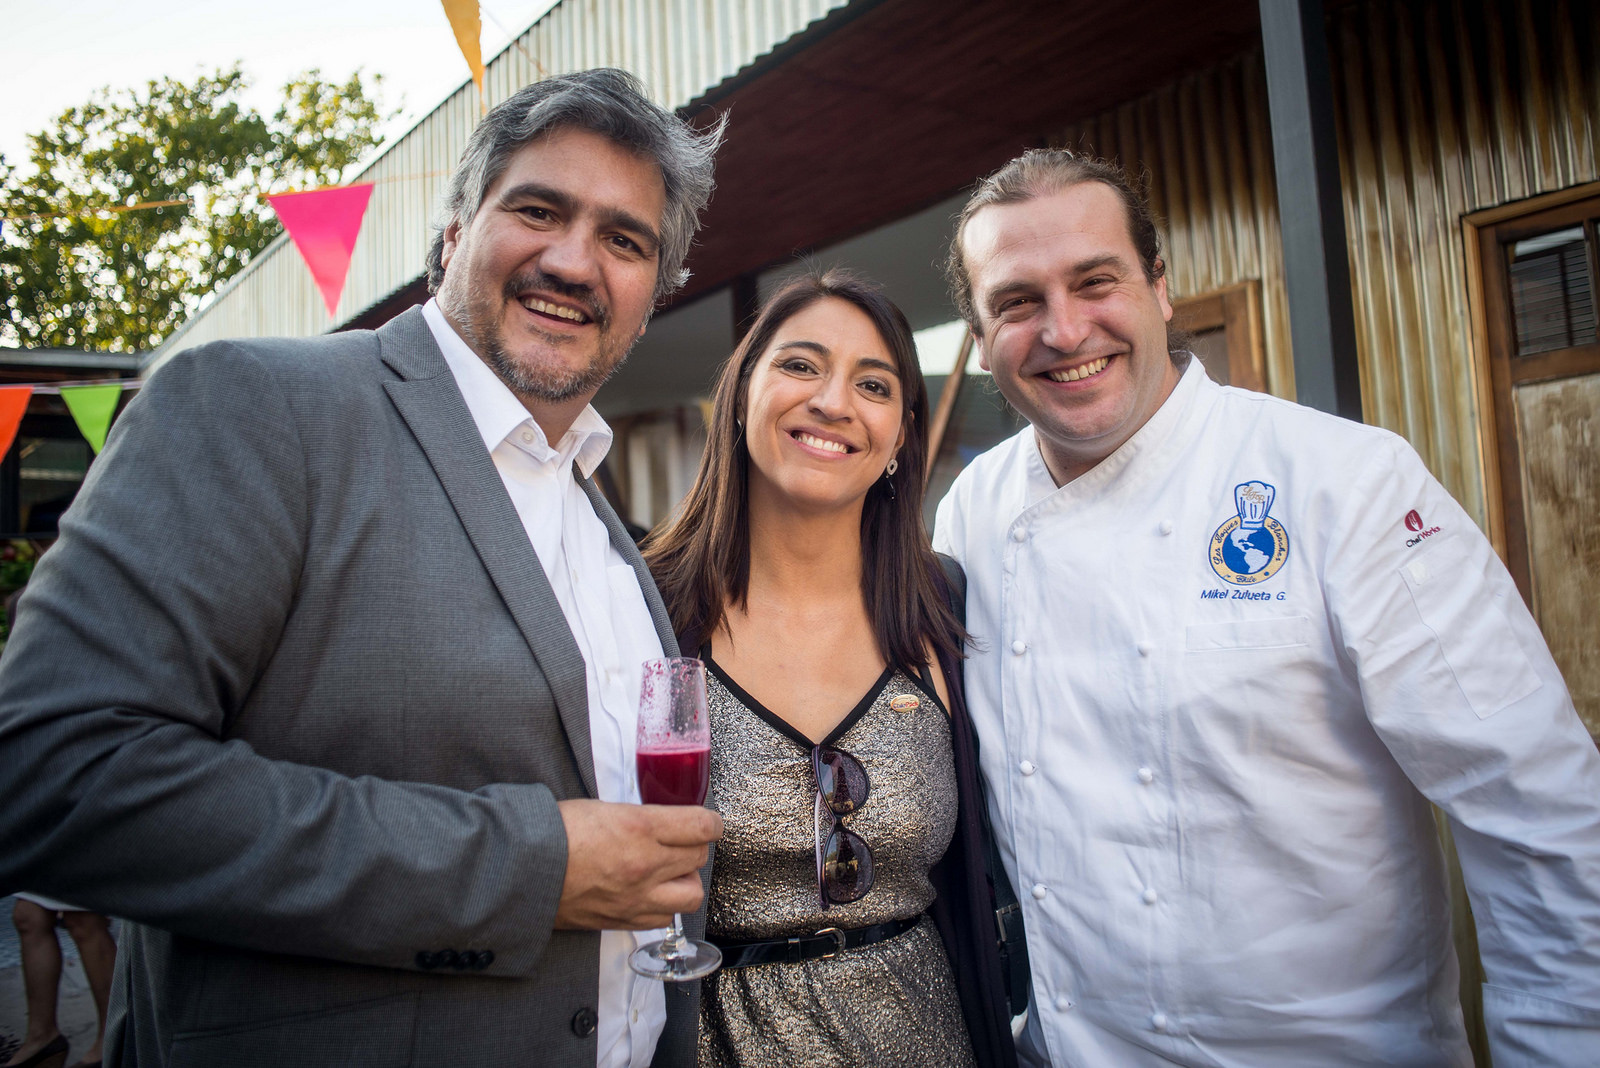 (De izquierda a derecha) Alejandro Buvinic, Director de ProChile; Natalia Sepulveda, Jefa del Departamento de Estudios y Marketing de Asprocer, y el Chef Mikel Zulueta.
